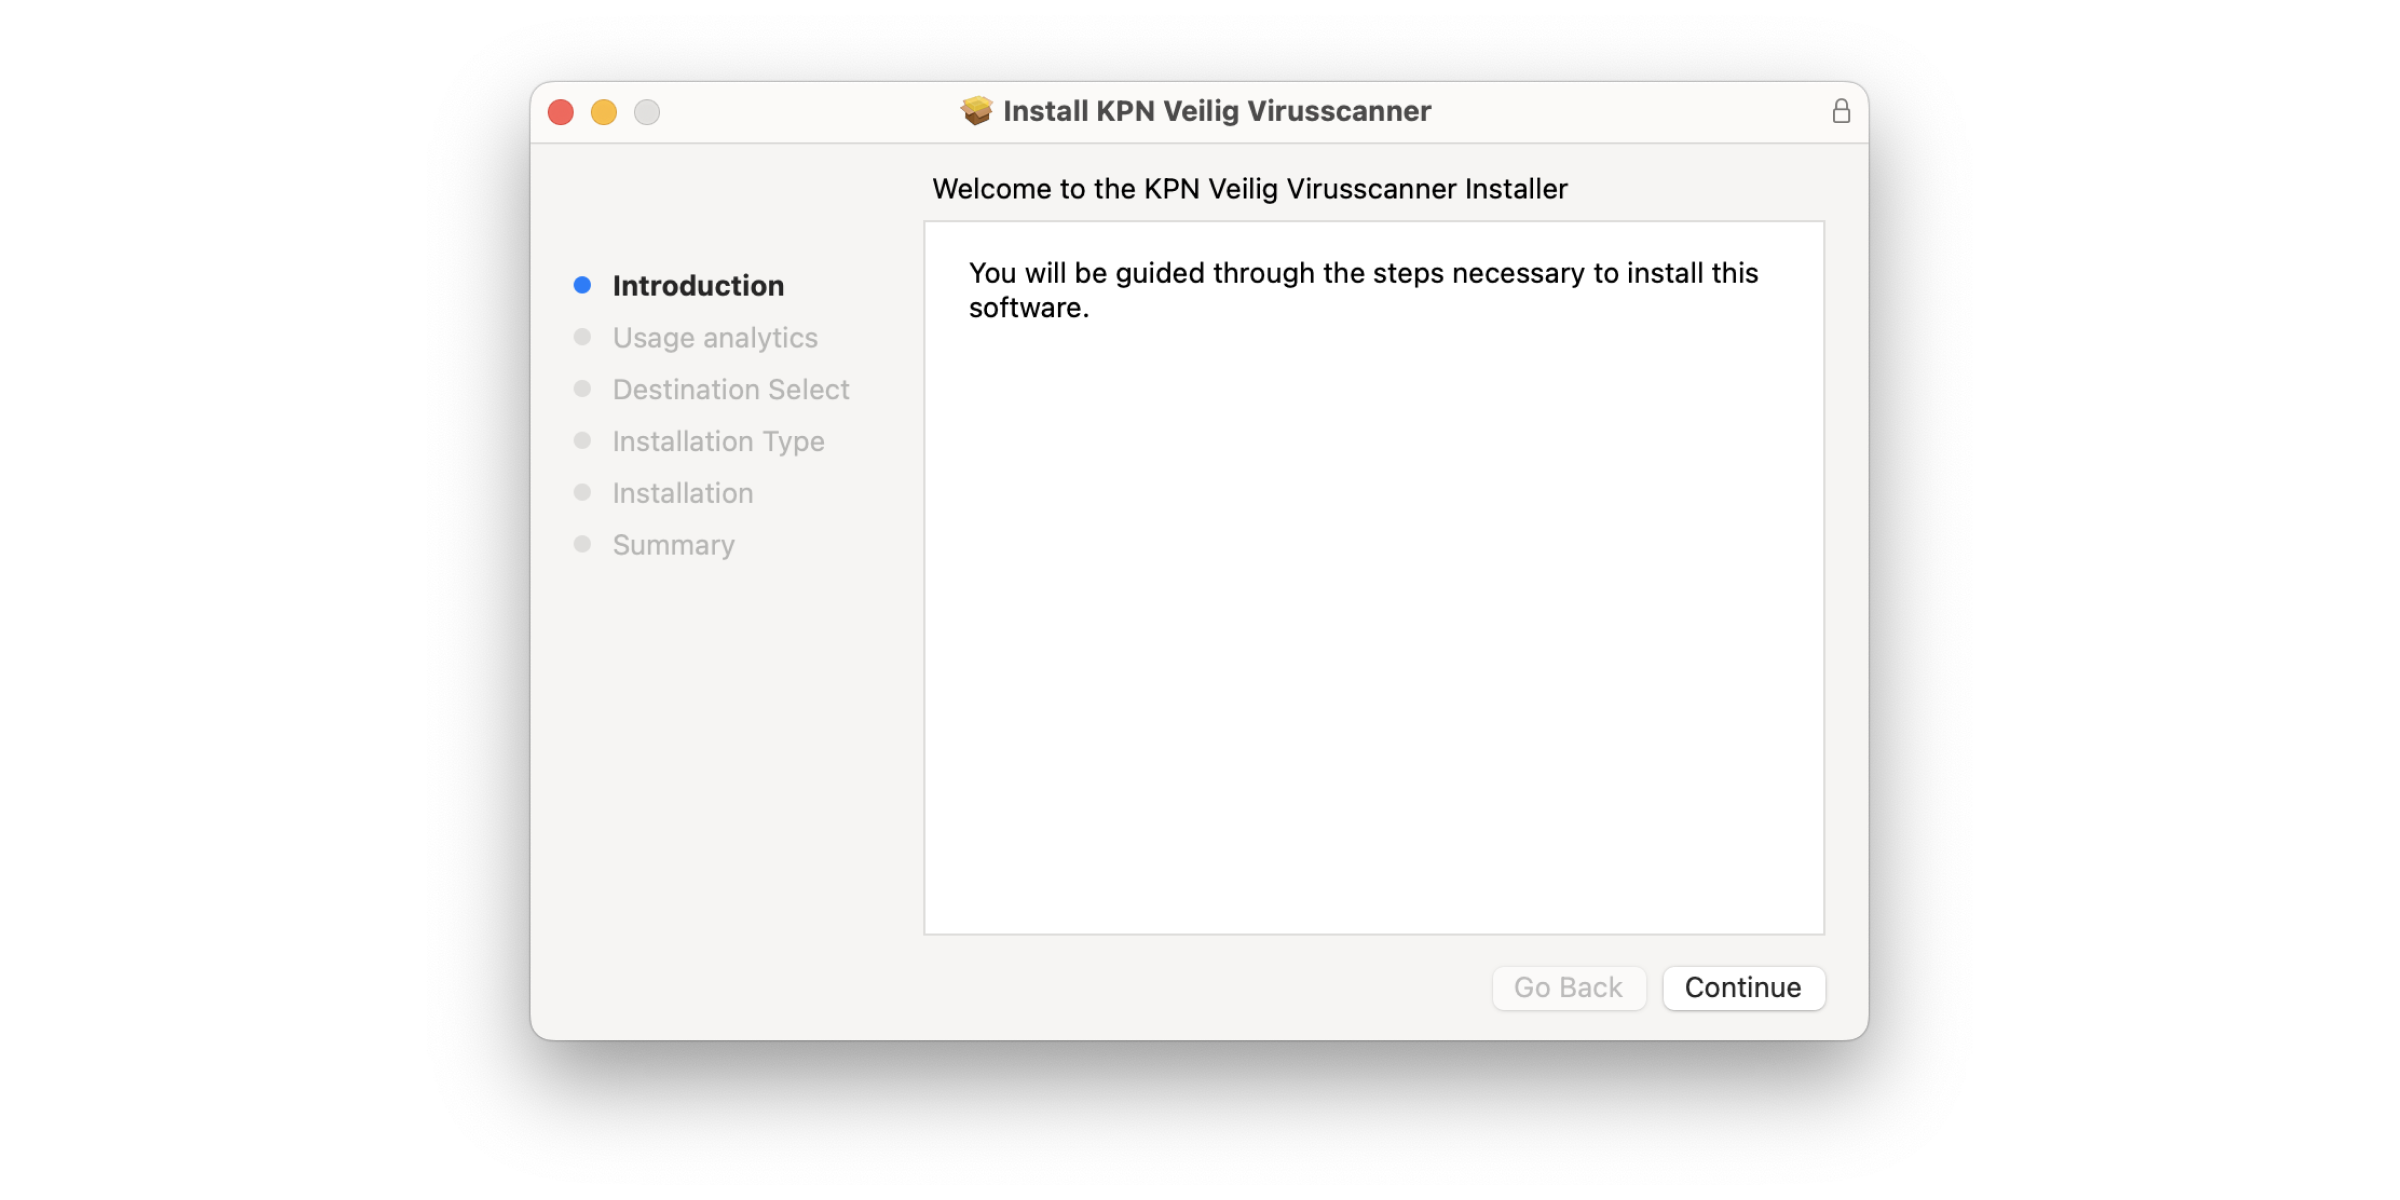 'Install KPN Veilig Virusscanner' scherm met de stappen voor installatie.